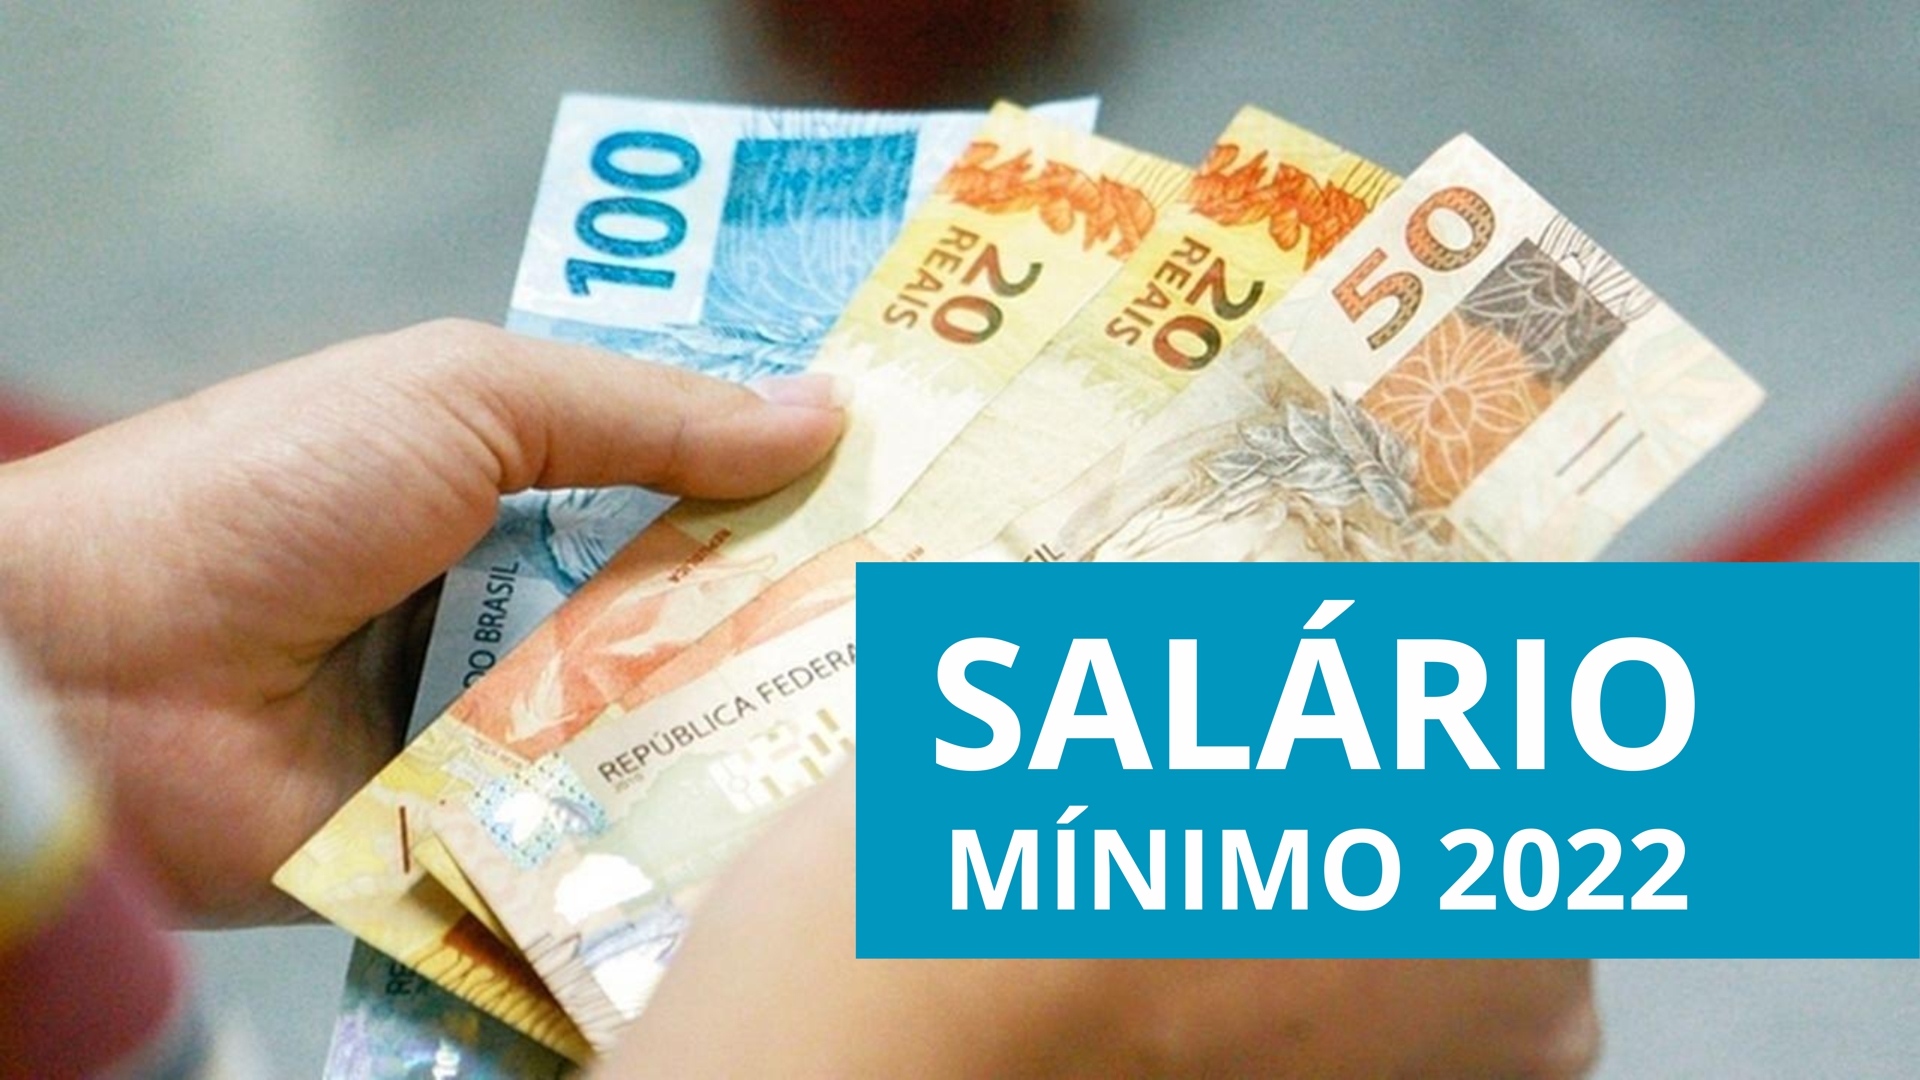 Salário mínimo 2022 novo valor já está em vigor; confira DKT